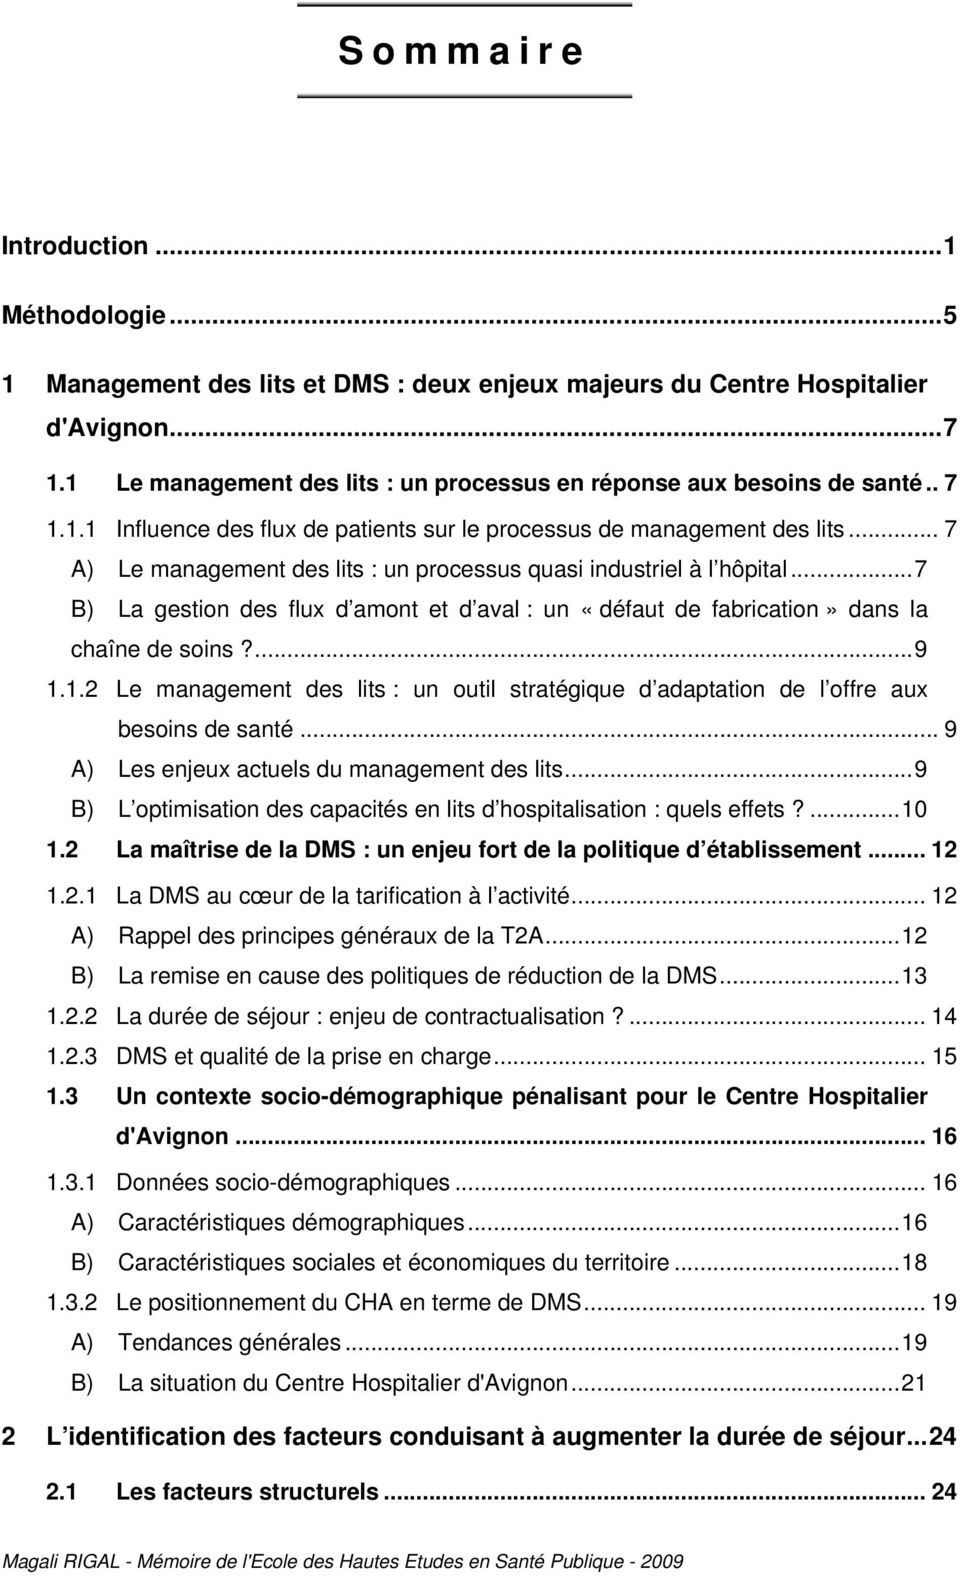 .. 7 A) Le management des lits : un processus quasi industriel à l hôpital...7 B) La gestion des flux d amont et d aval : un «défaut de fabrication» dans la chaîne de soins?...9 1.